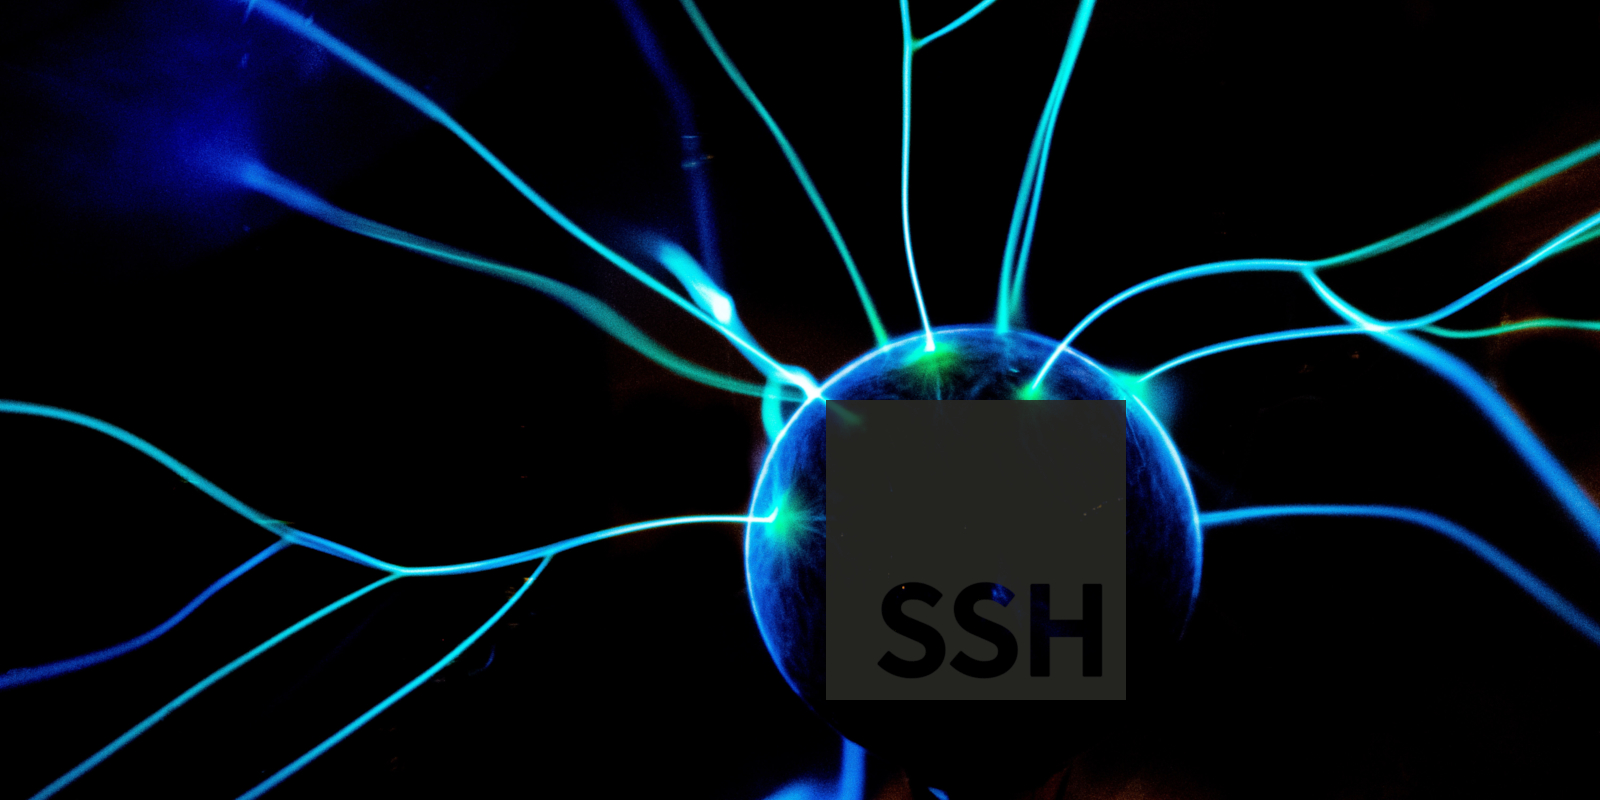 Unofficial SSH logo